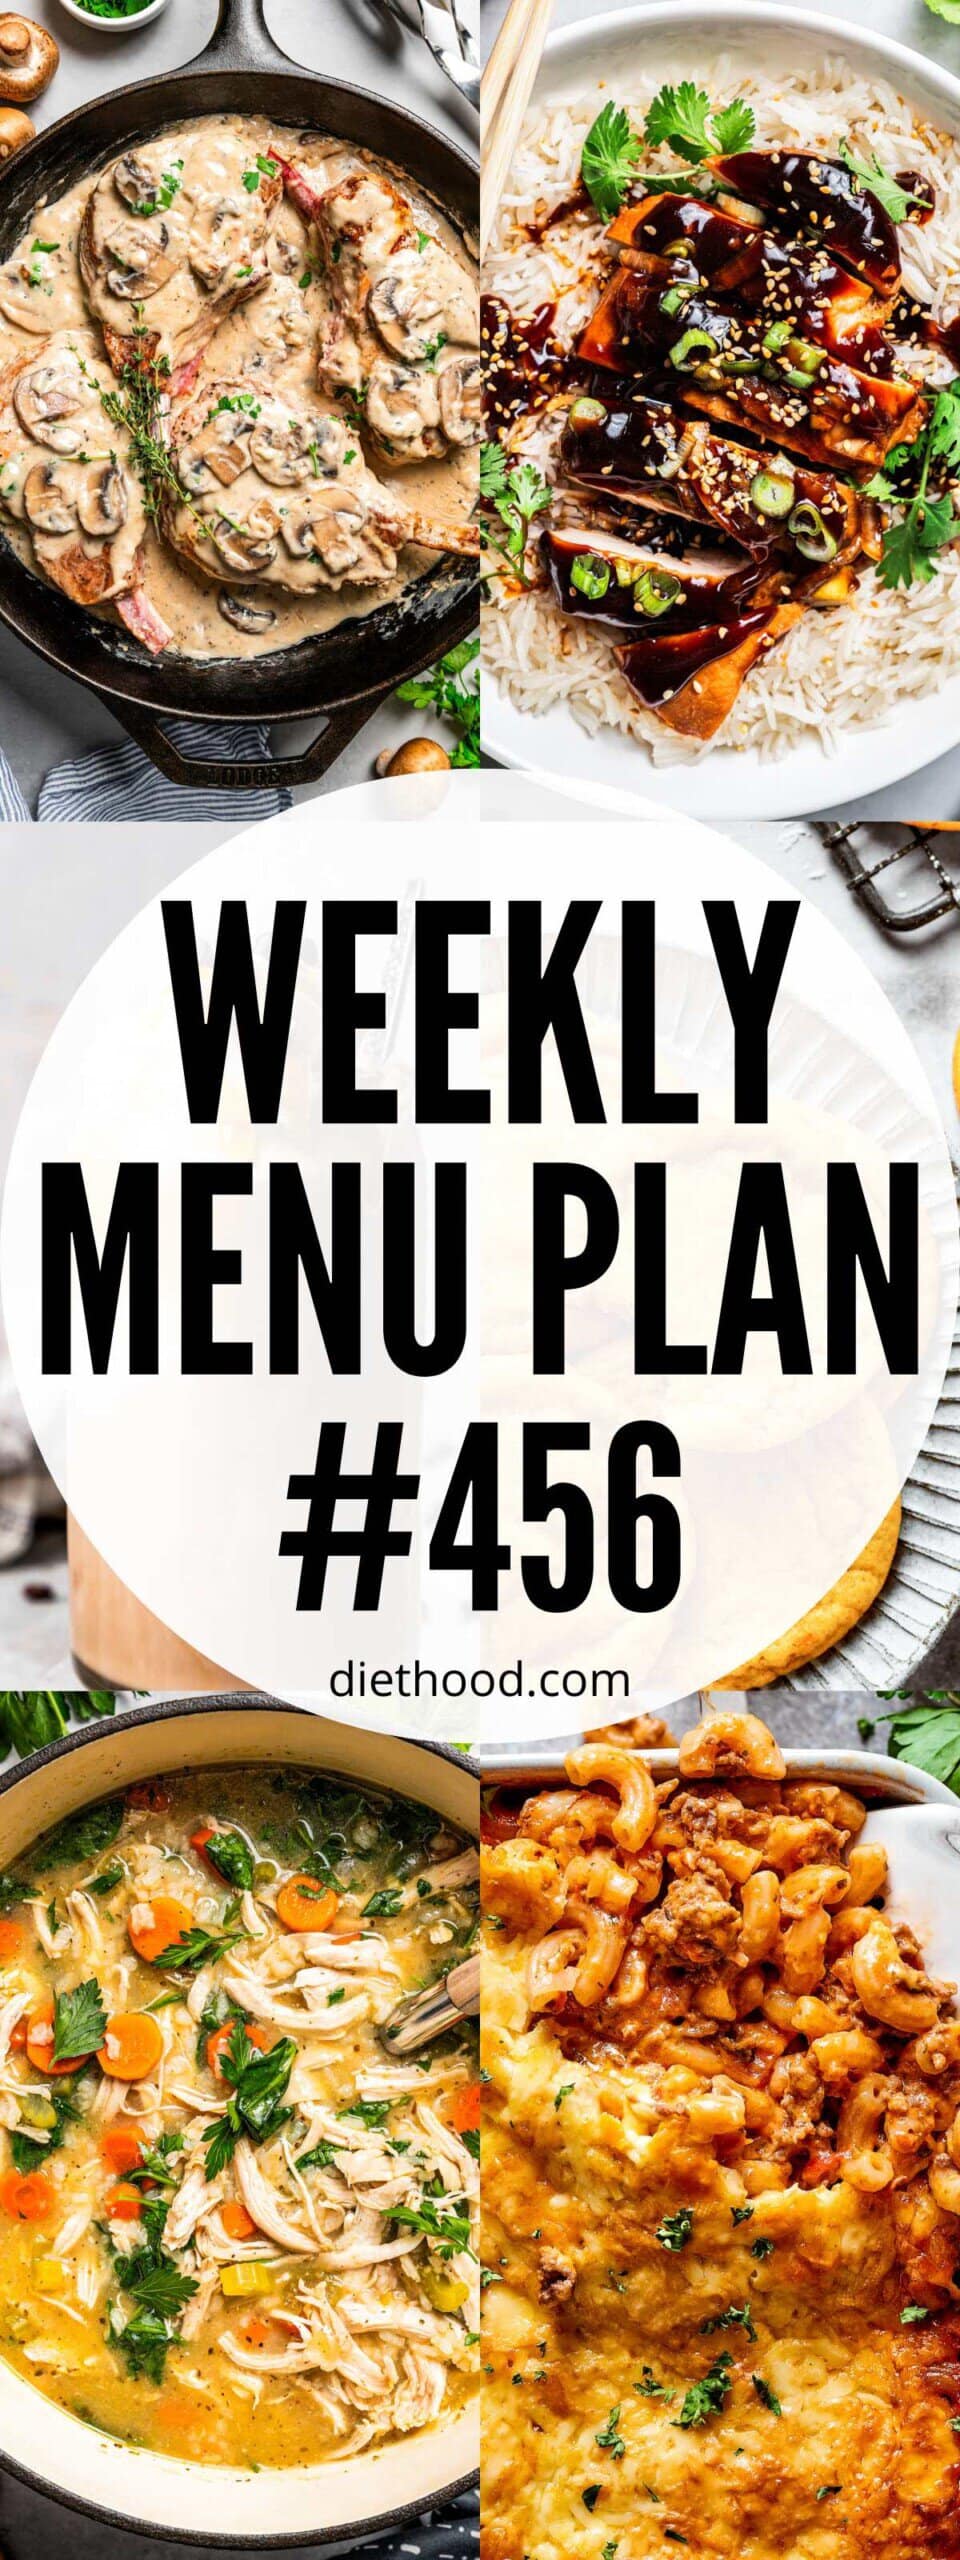 Weekly Menu Plan 456 | Diethood